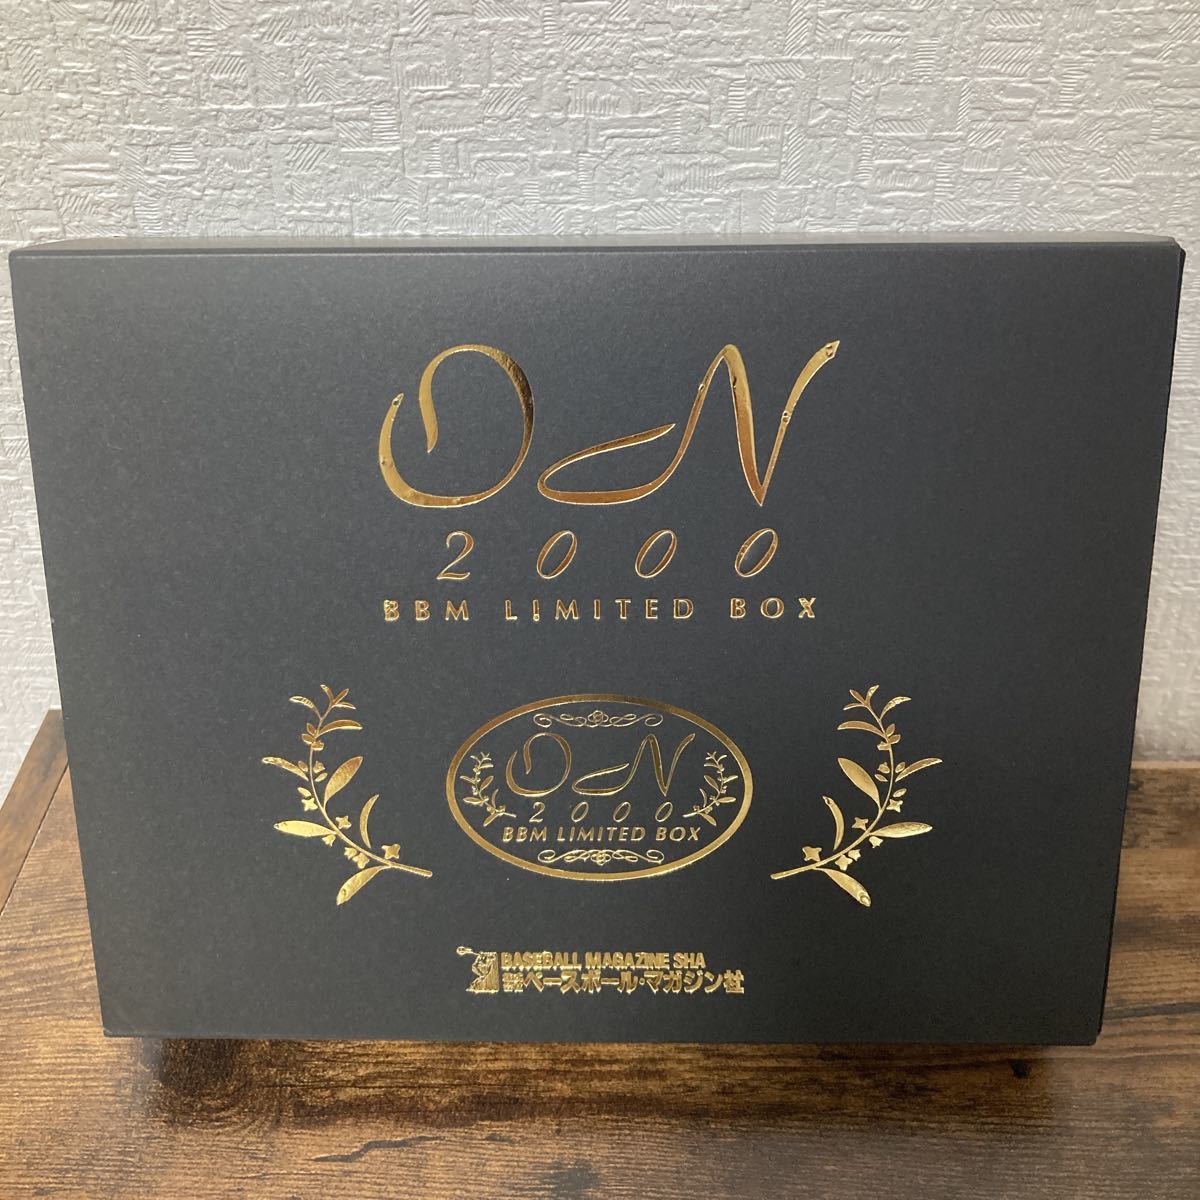 プロ野球カード BBM 2000 ON Limited Box 長嶋茂雄 王貞治 カード